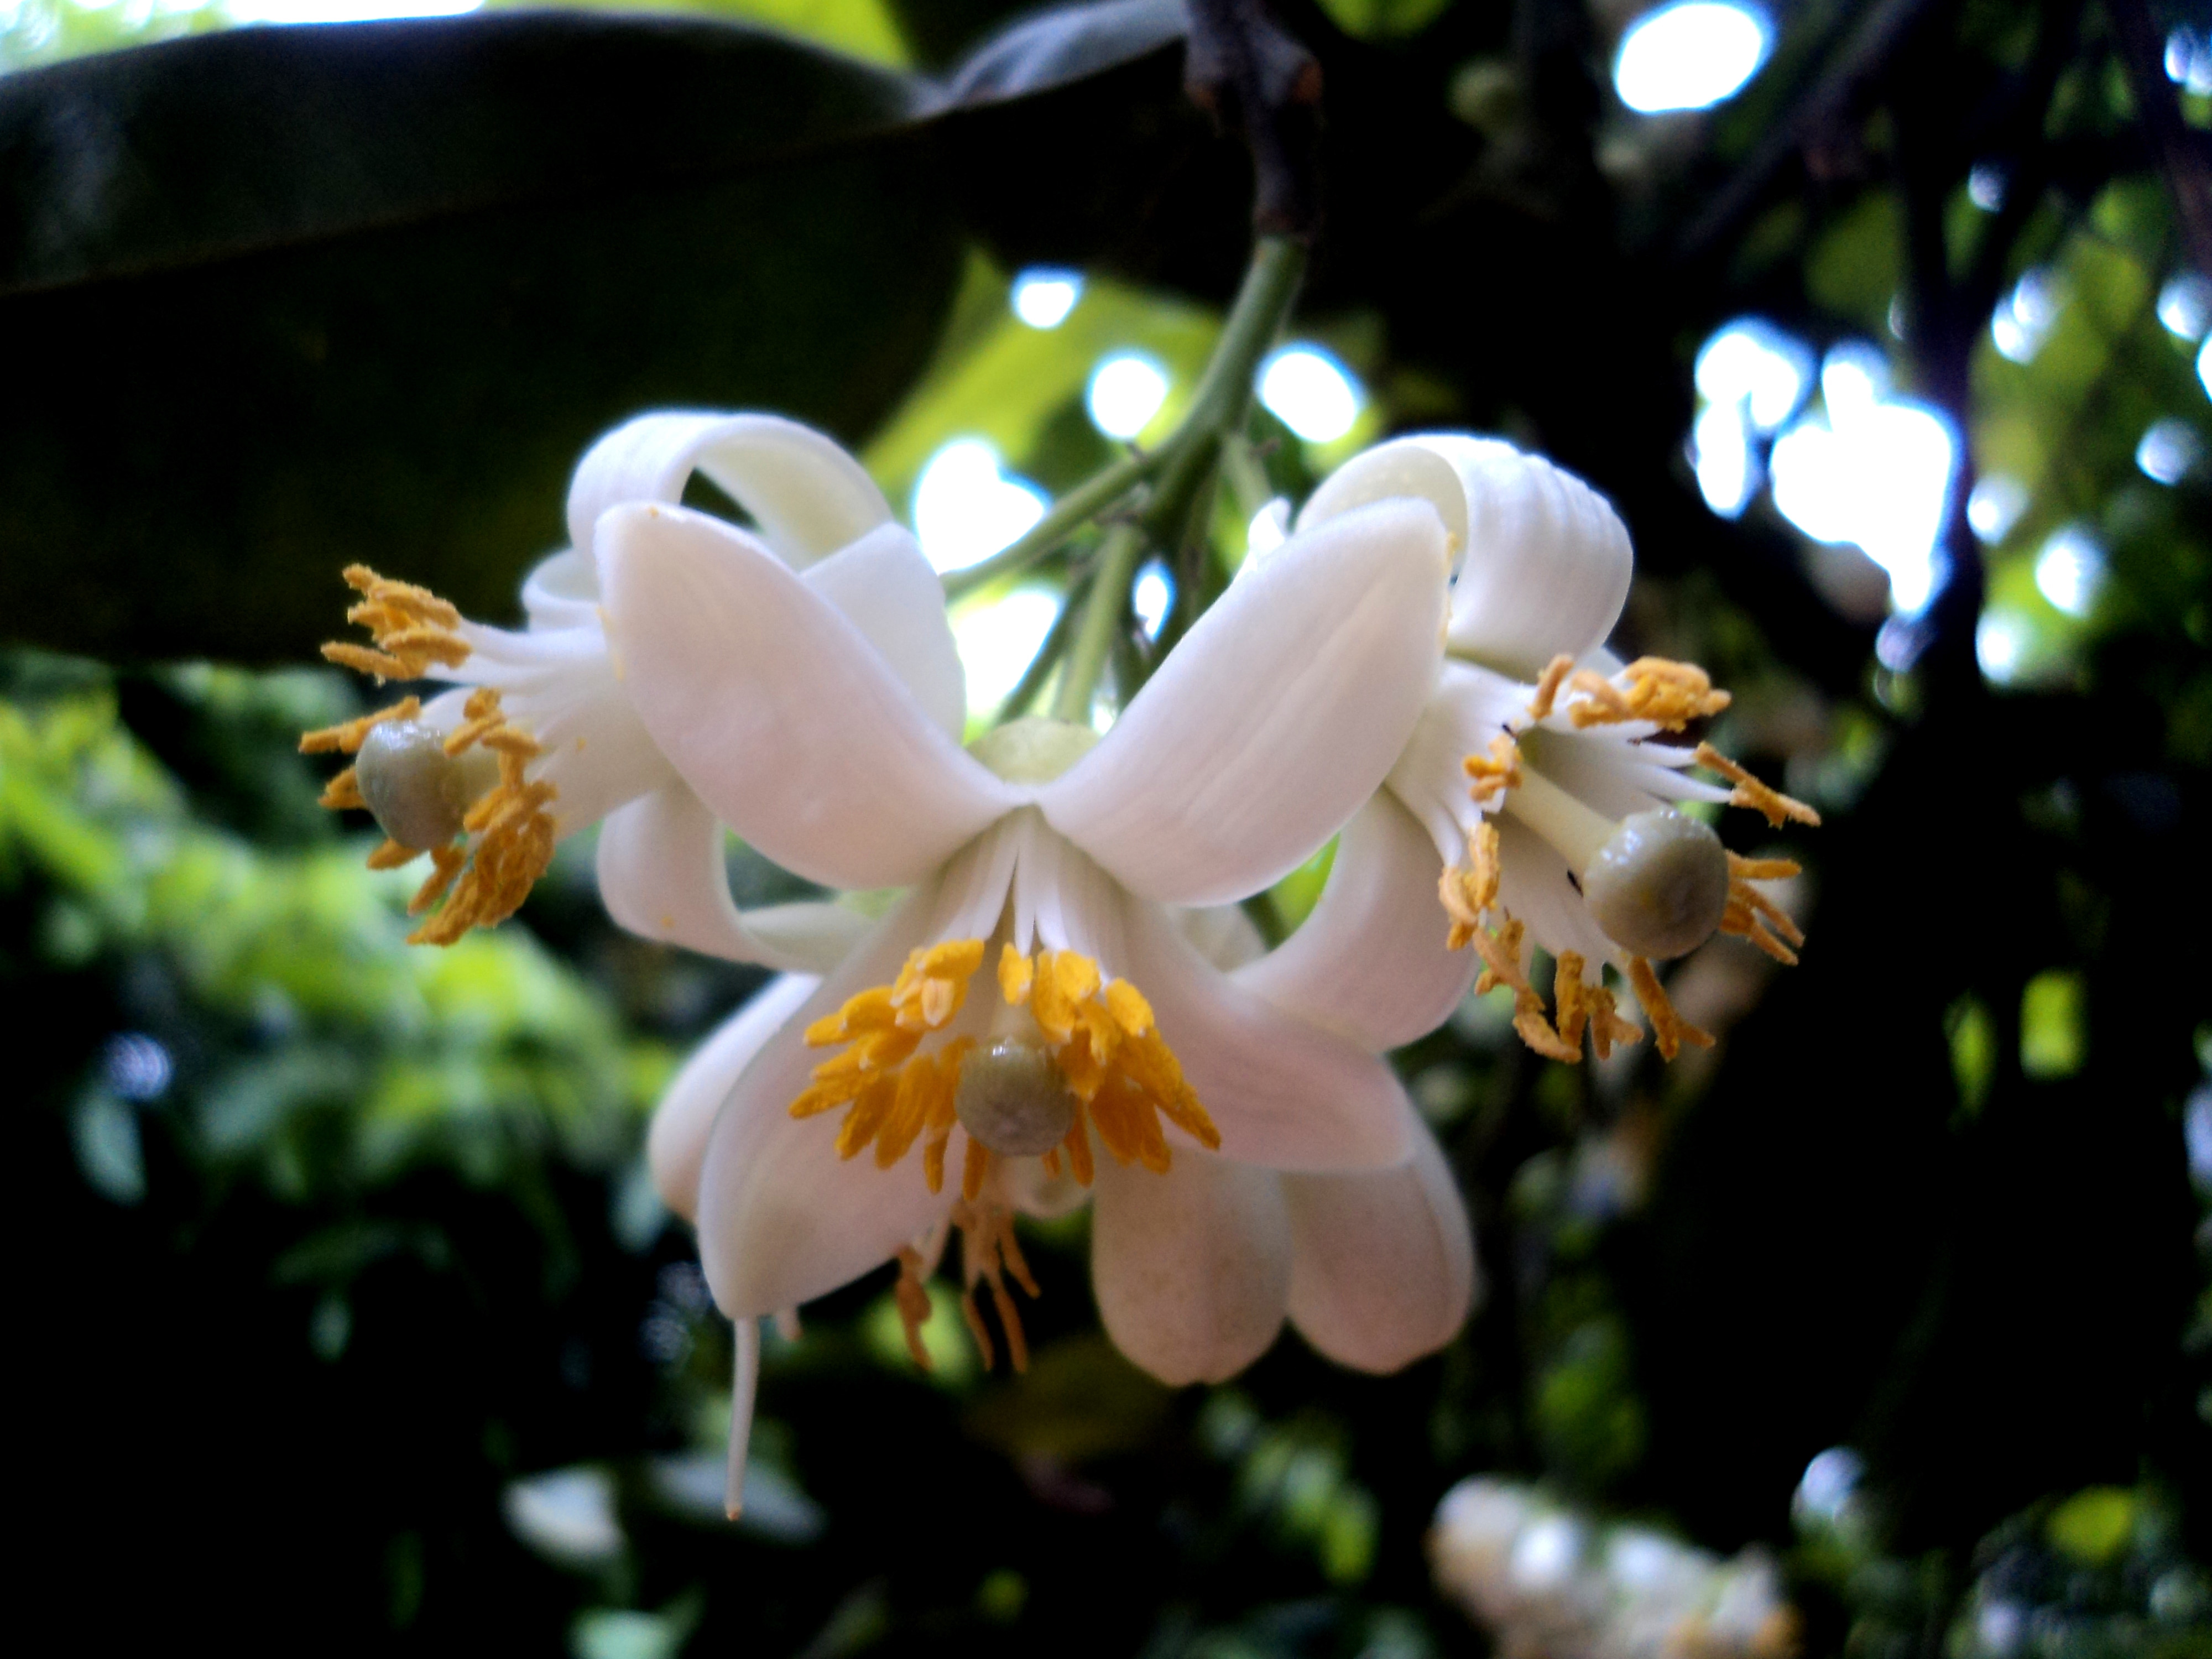 Tổng hợp những hình ảnh đẹp nhất về mùi hoa bưởi tháng ba - [Kích thước hình ảnh: 4000x3000 px]